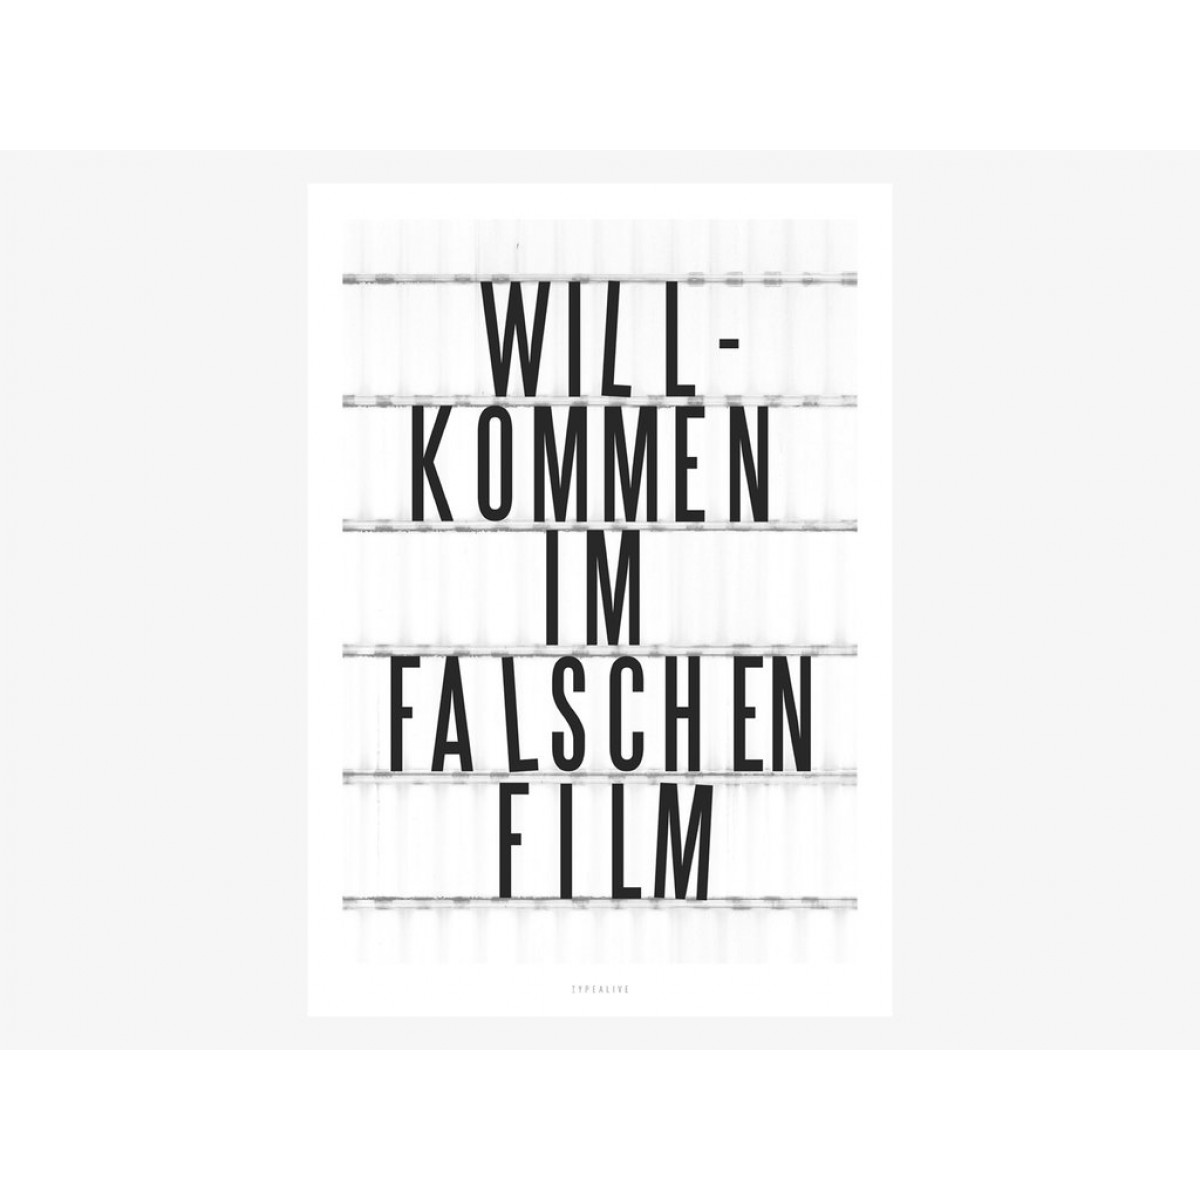 typealive / Falscher Film